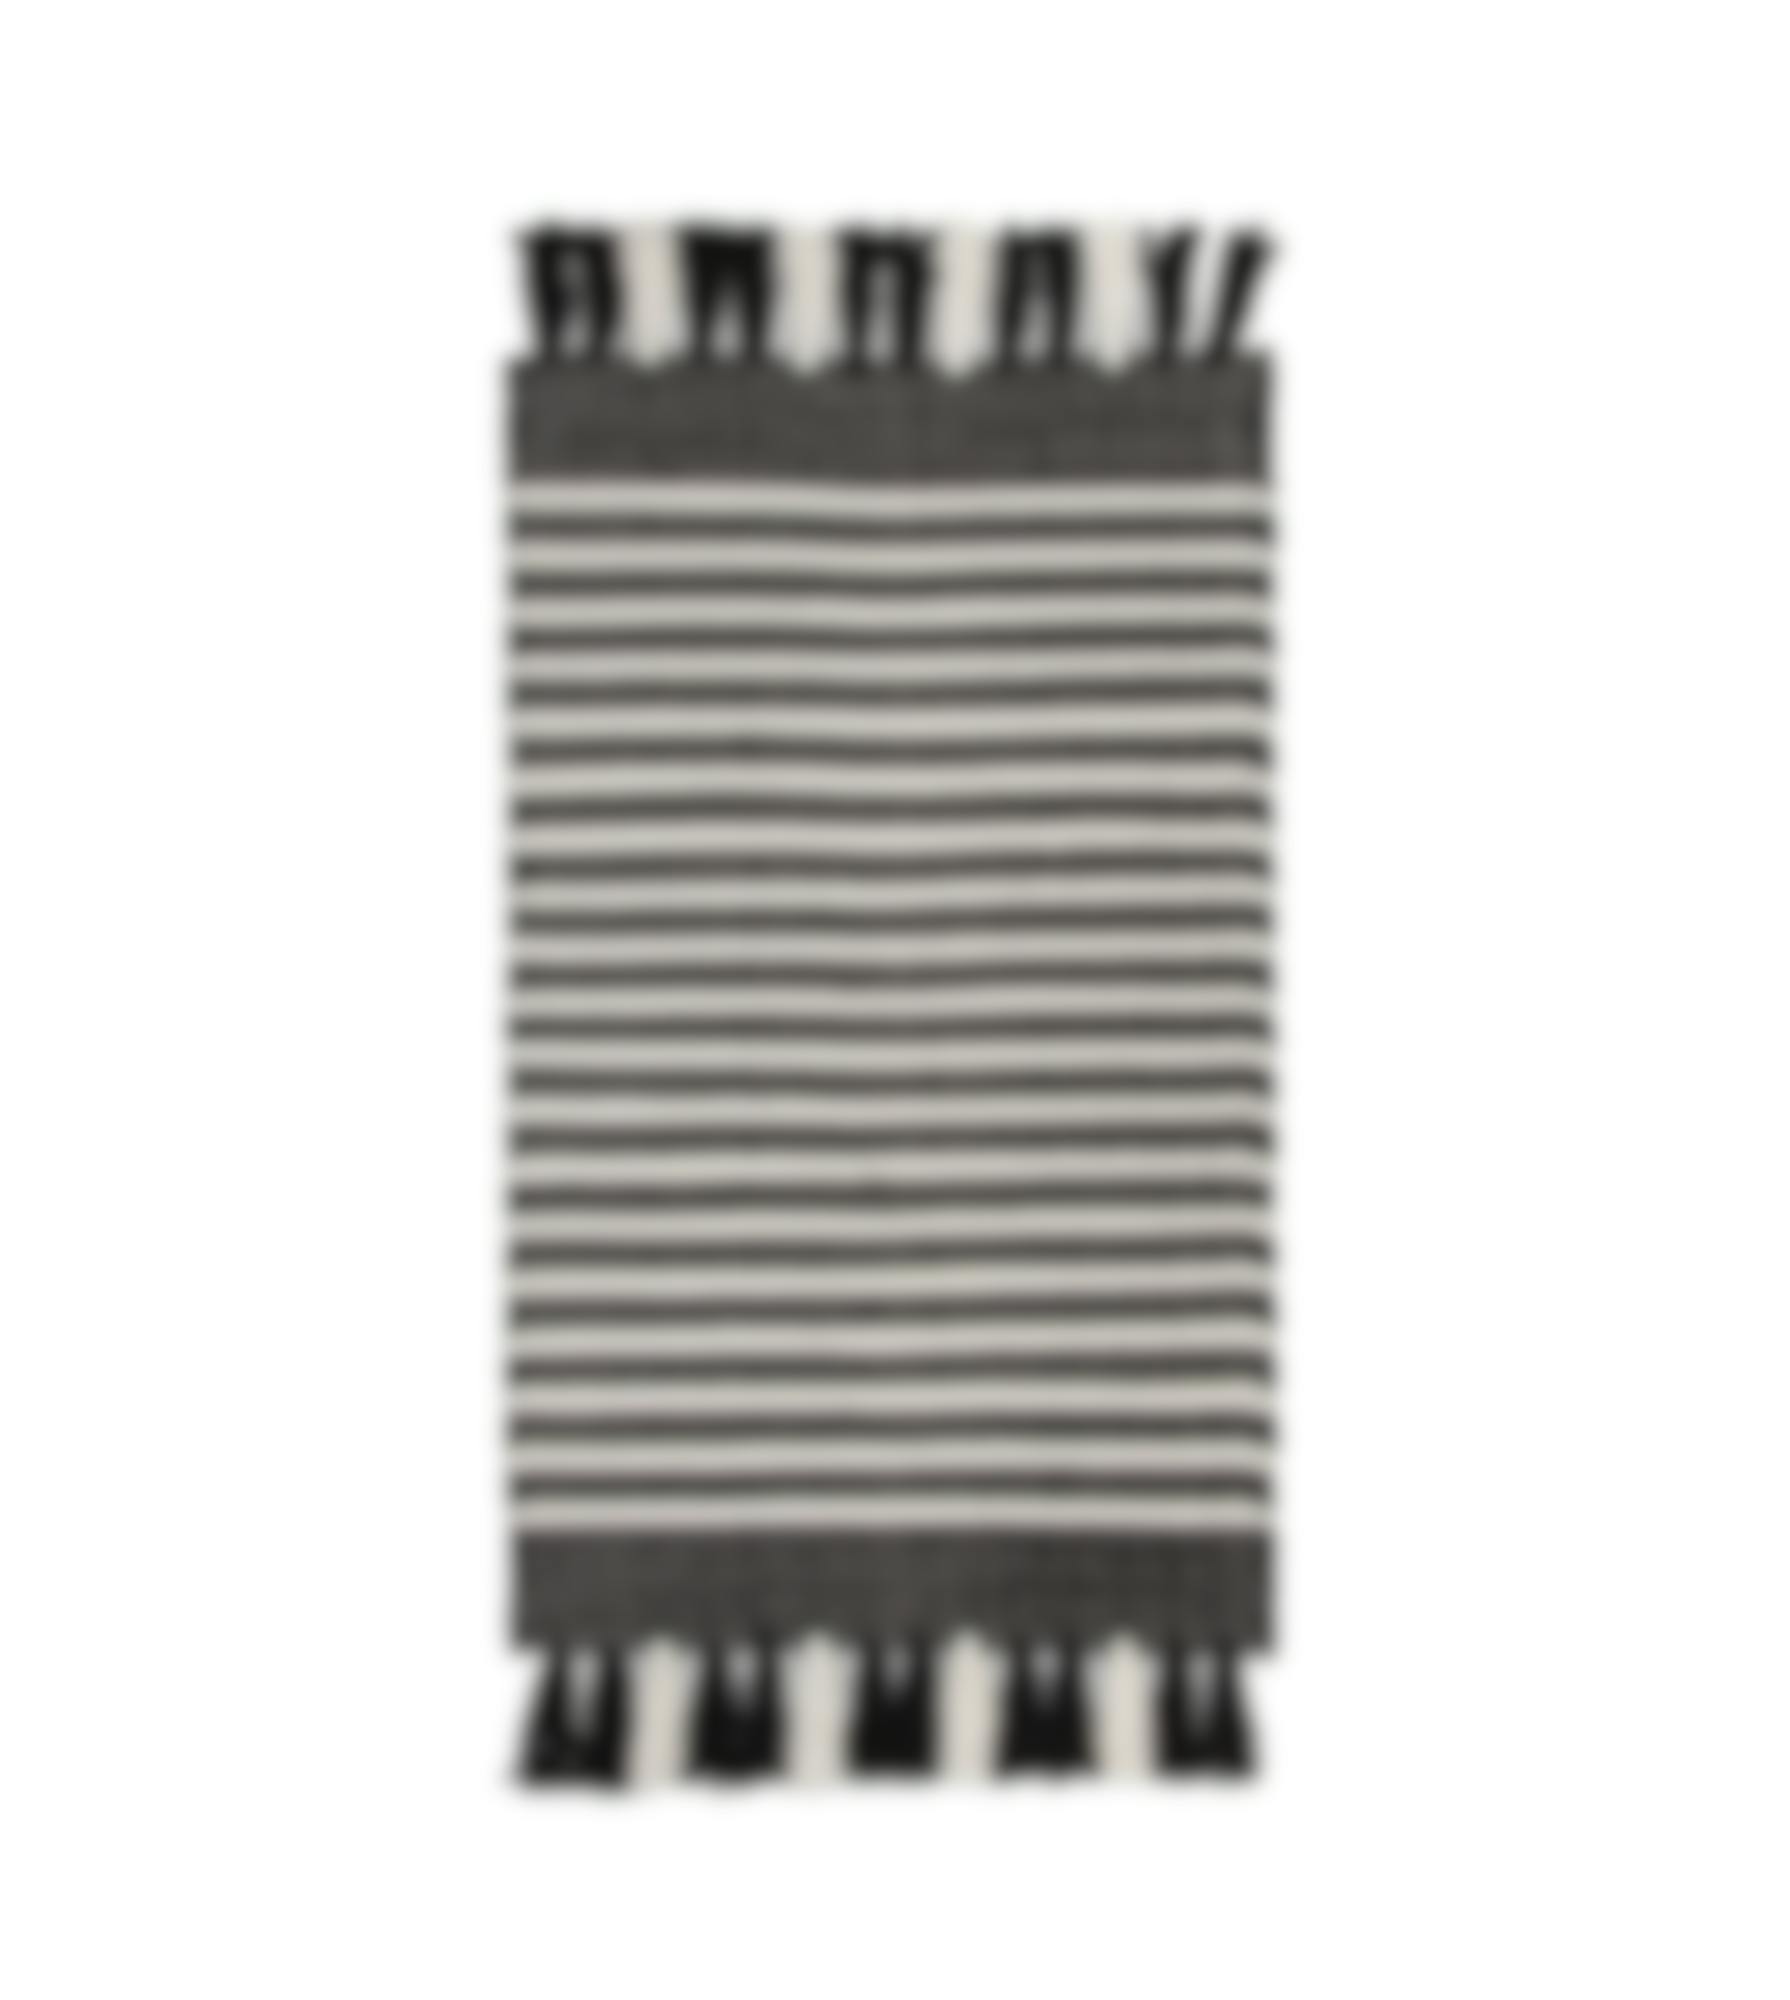 Walra badmat Stripes & Structure Zwart Wit